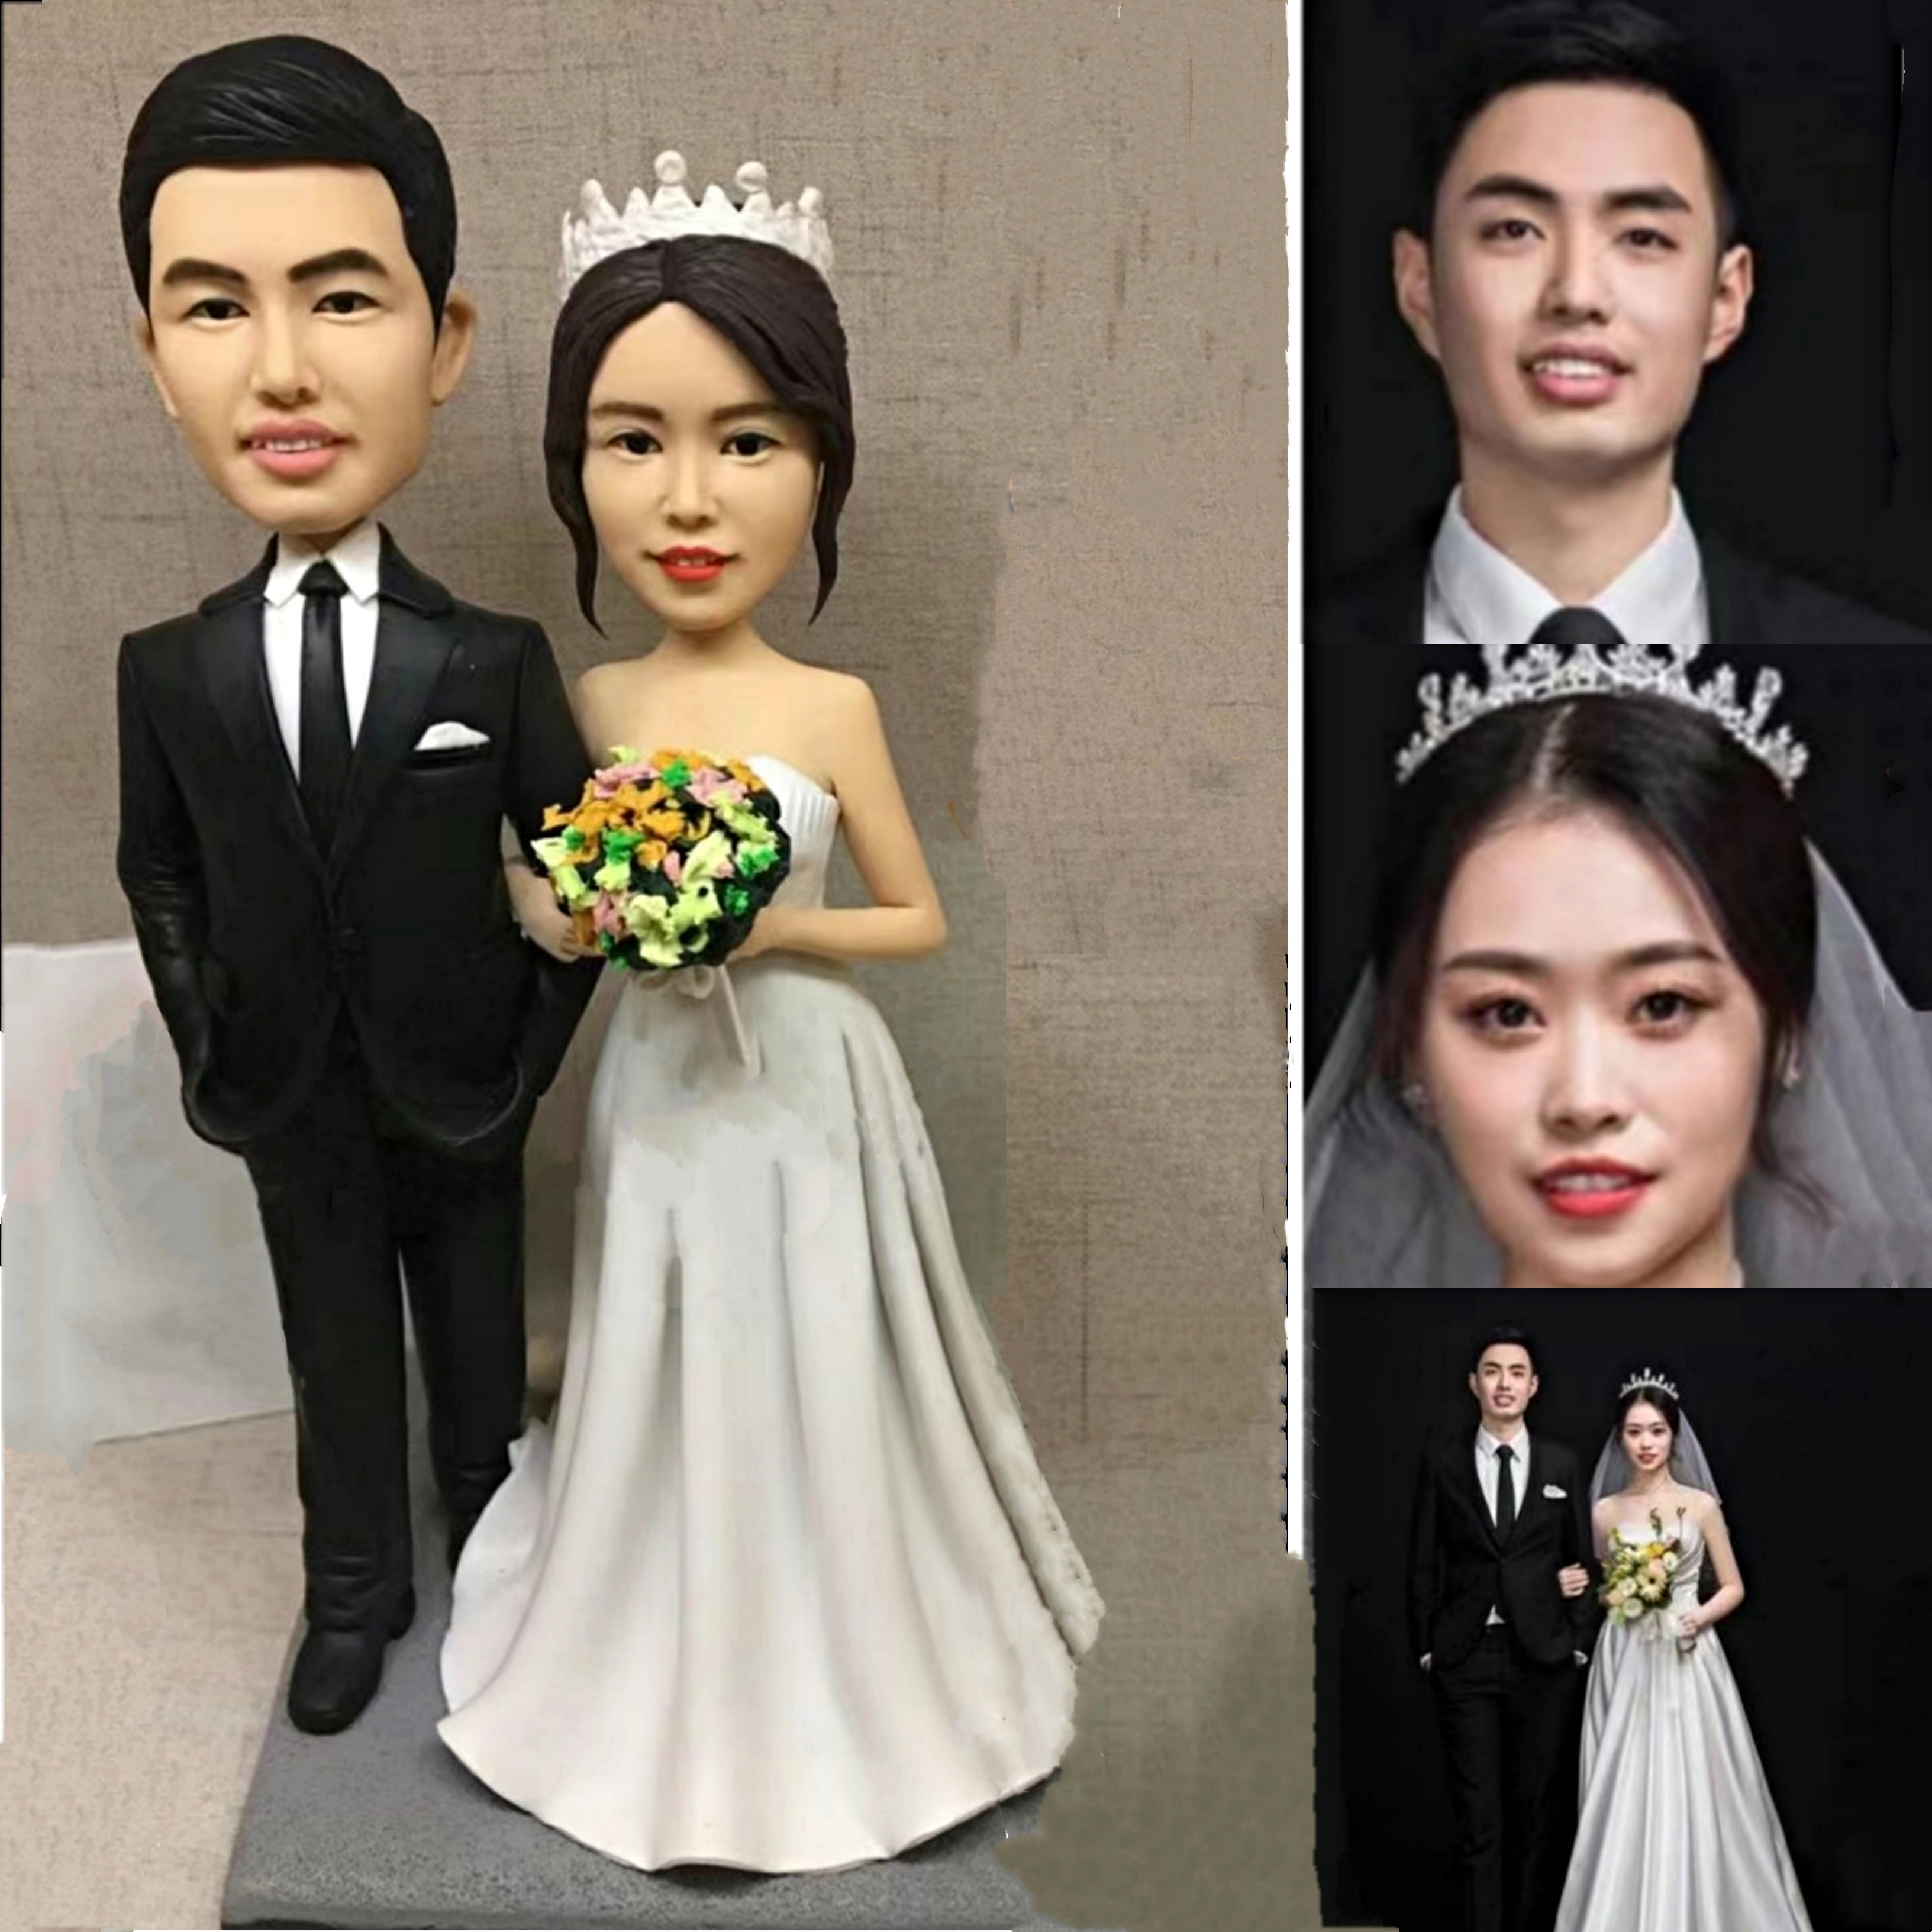 【オーダーメイド】3D肖像画似顔絵人形/結婚祝い記念日誕生日プレゼントに//カップル夫婦父母親17